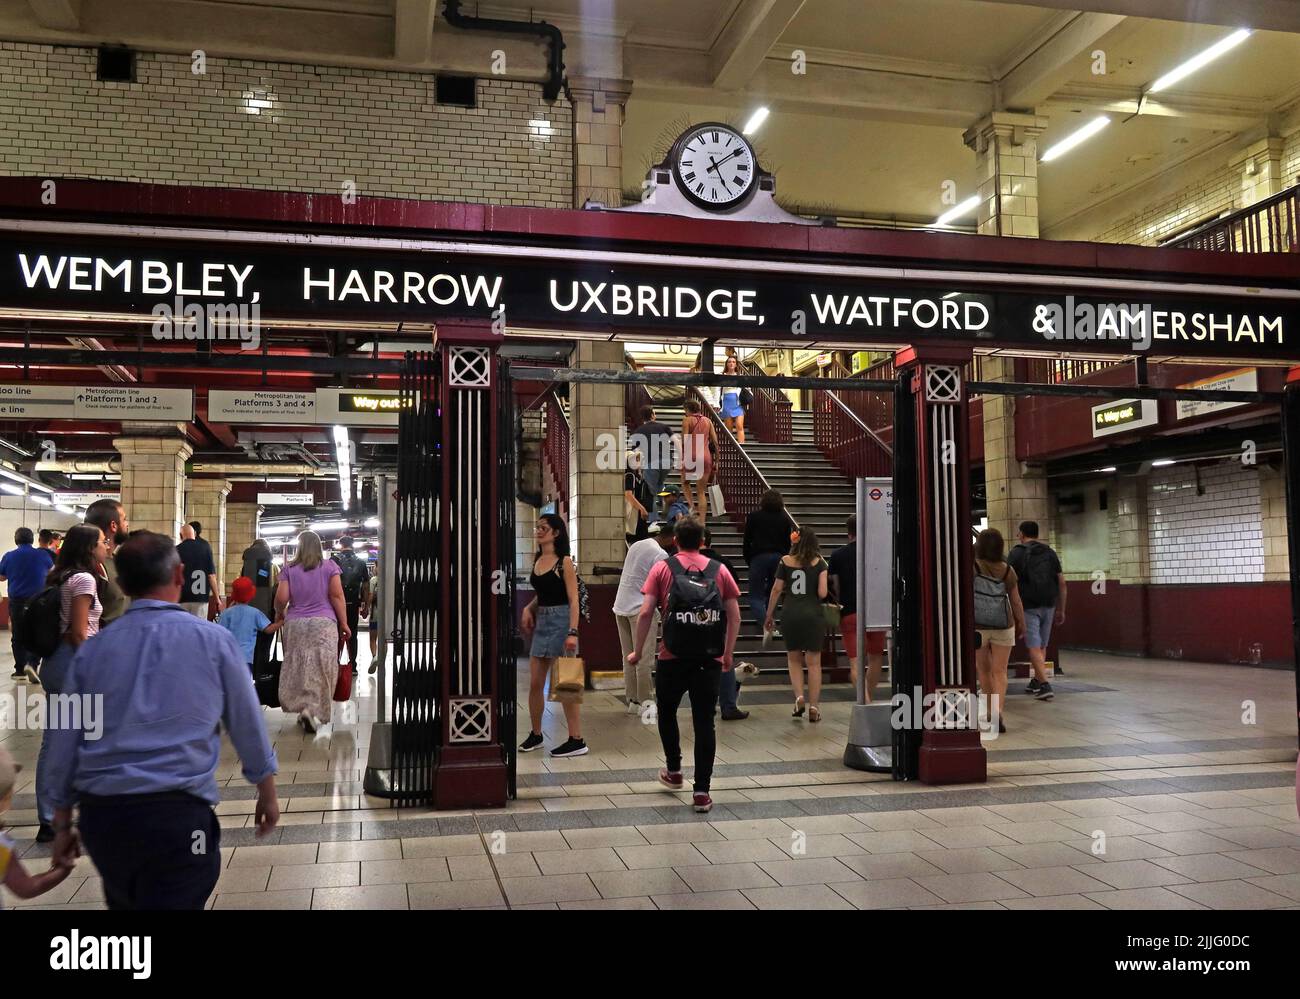 Entrée victorienne très fréquentée de la station de métro Baker Street, lignes vers Wembley, Harrow, Uxbridge, Watford, Amersham - Londres, Angleterre, Royaume-Uni, NW1 Banque D'Images